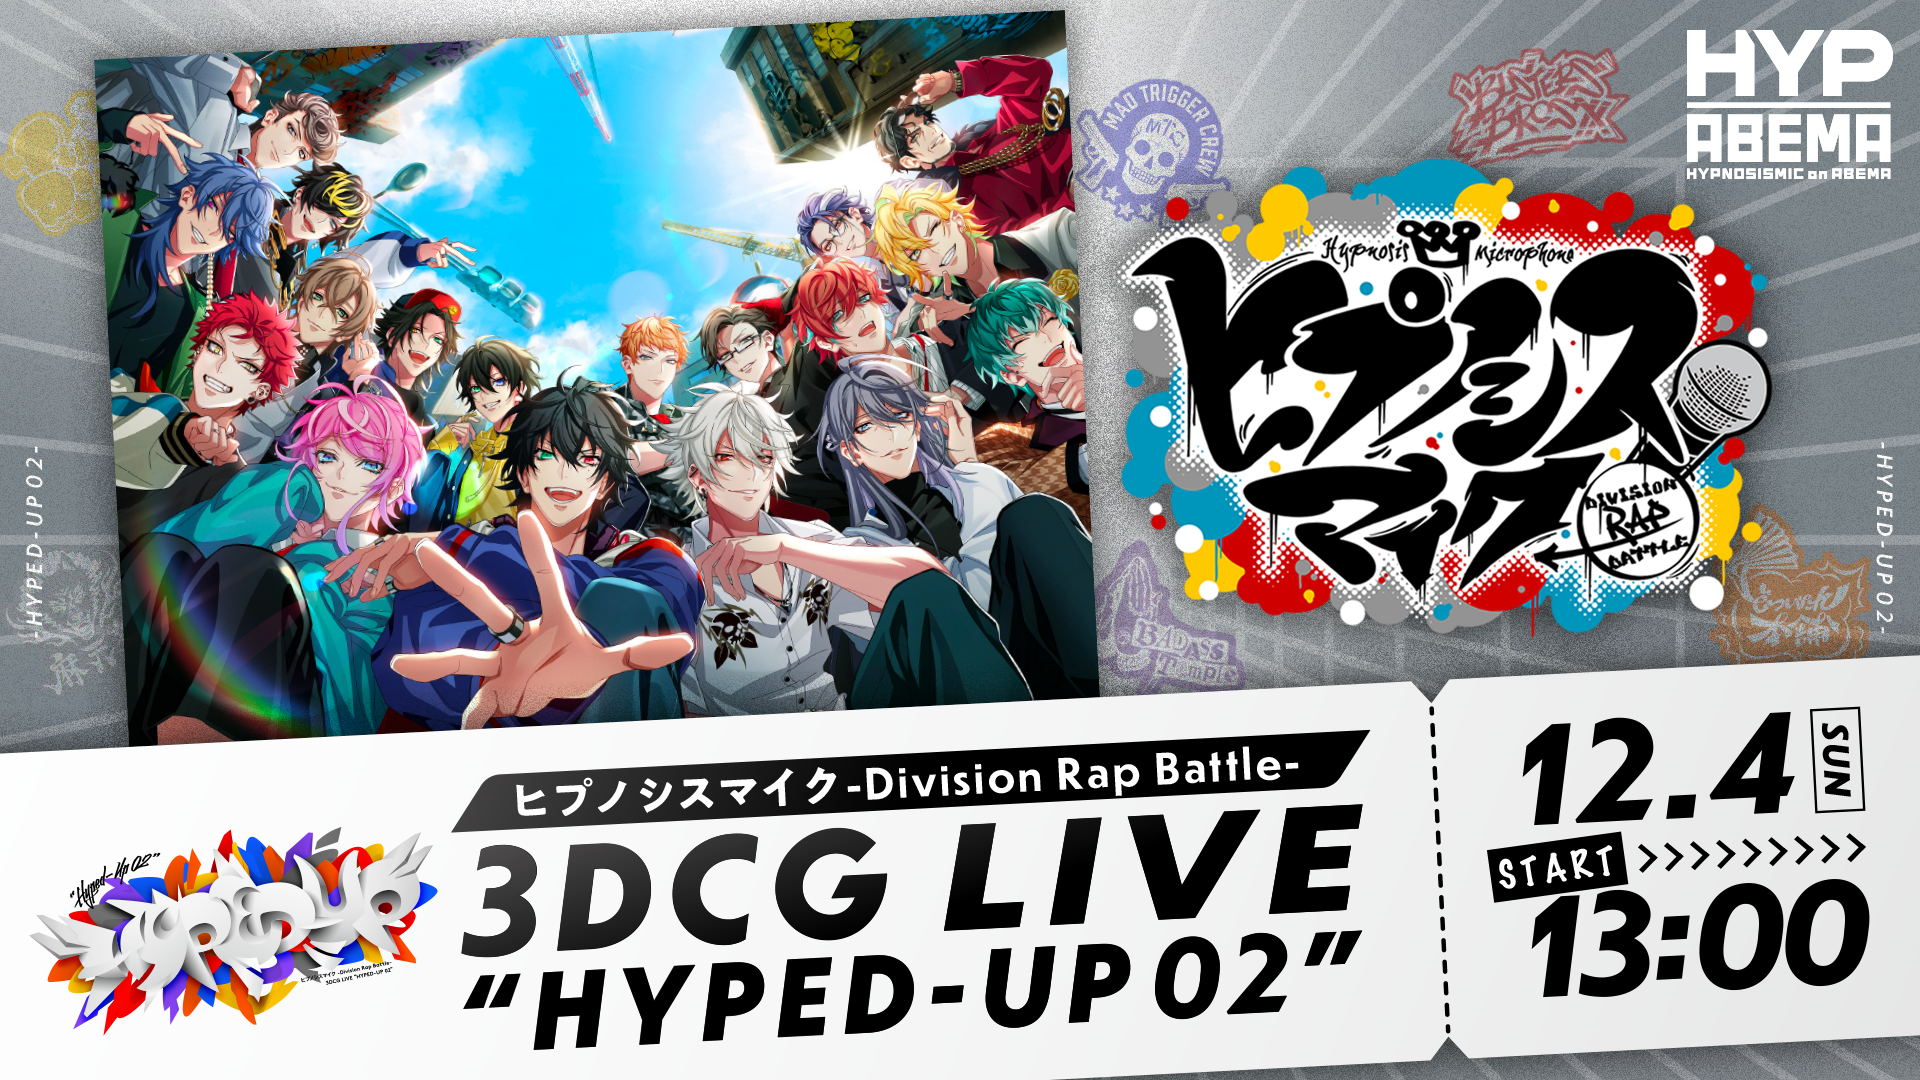 ヒプノシスマイク -Division Rap Battle- 3DCG LIVE “HYPED-UP 02 